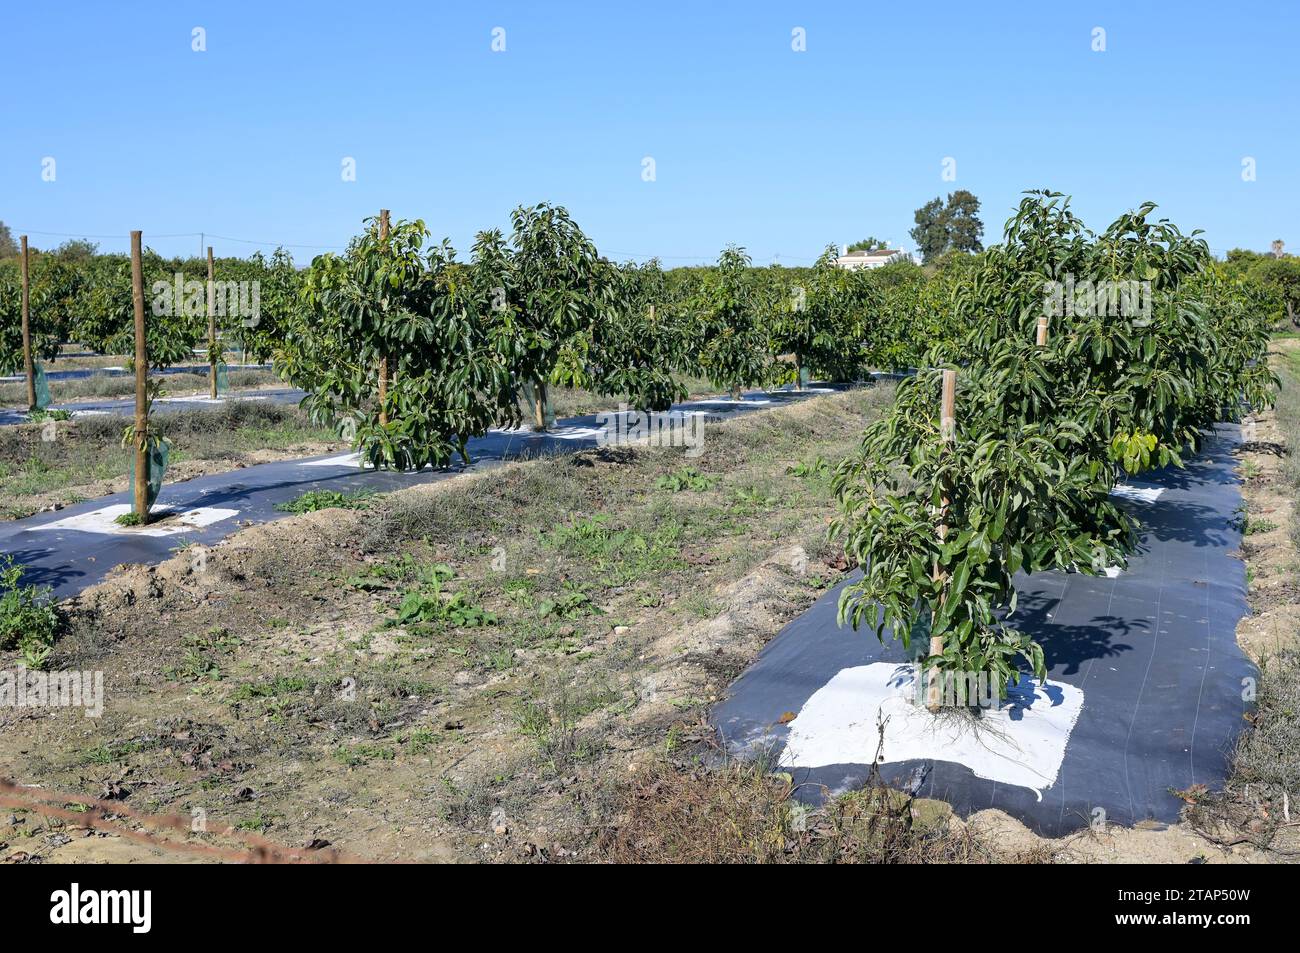 PORTUGAL, Algarve, Luz de Tavira, Avocado-Baumplantage mit Tropfbewässerung, Avocado-Landwirtschaft benötigt viel Wasser für die Bewässerung / Avocado Anbau mit Tröpfchenbewässerung , für die Bewaesserung wird viel Wasser verbraucht Stockfoto